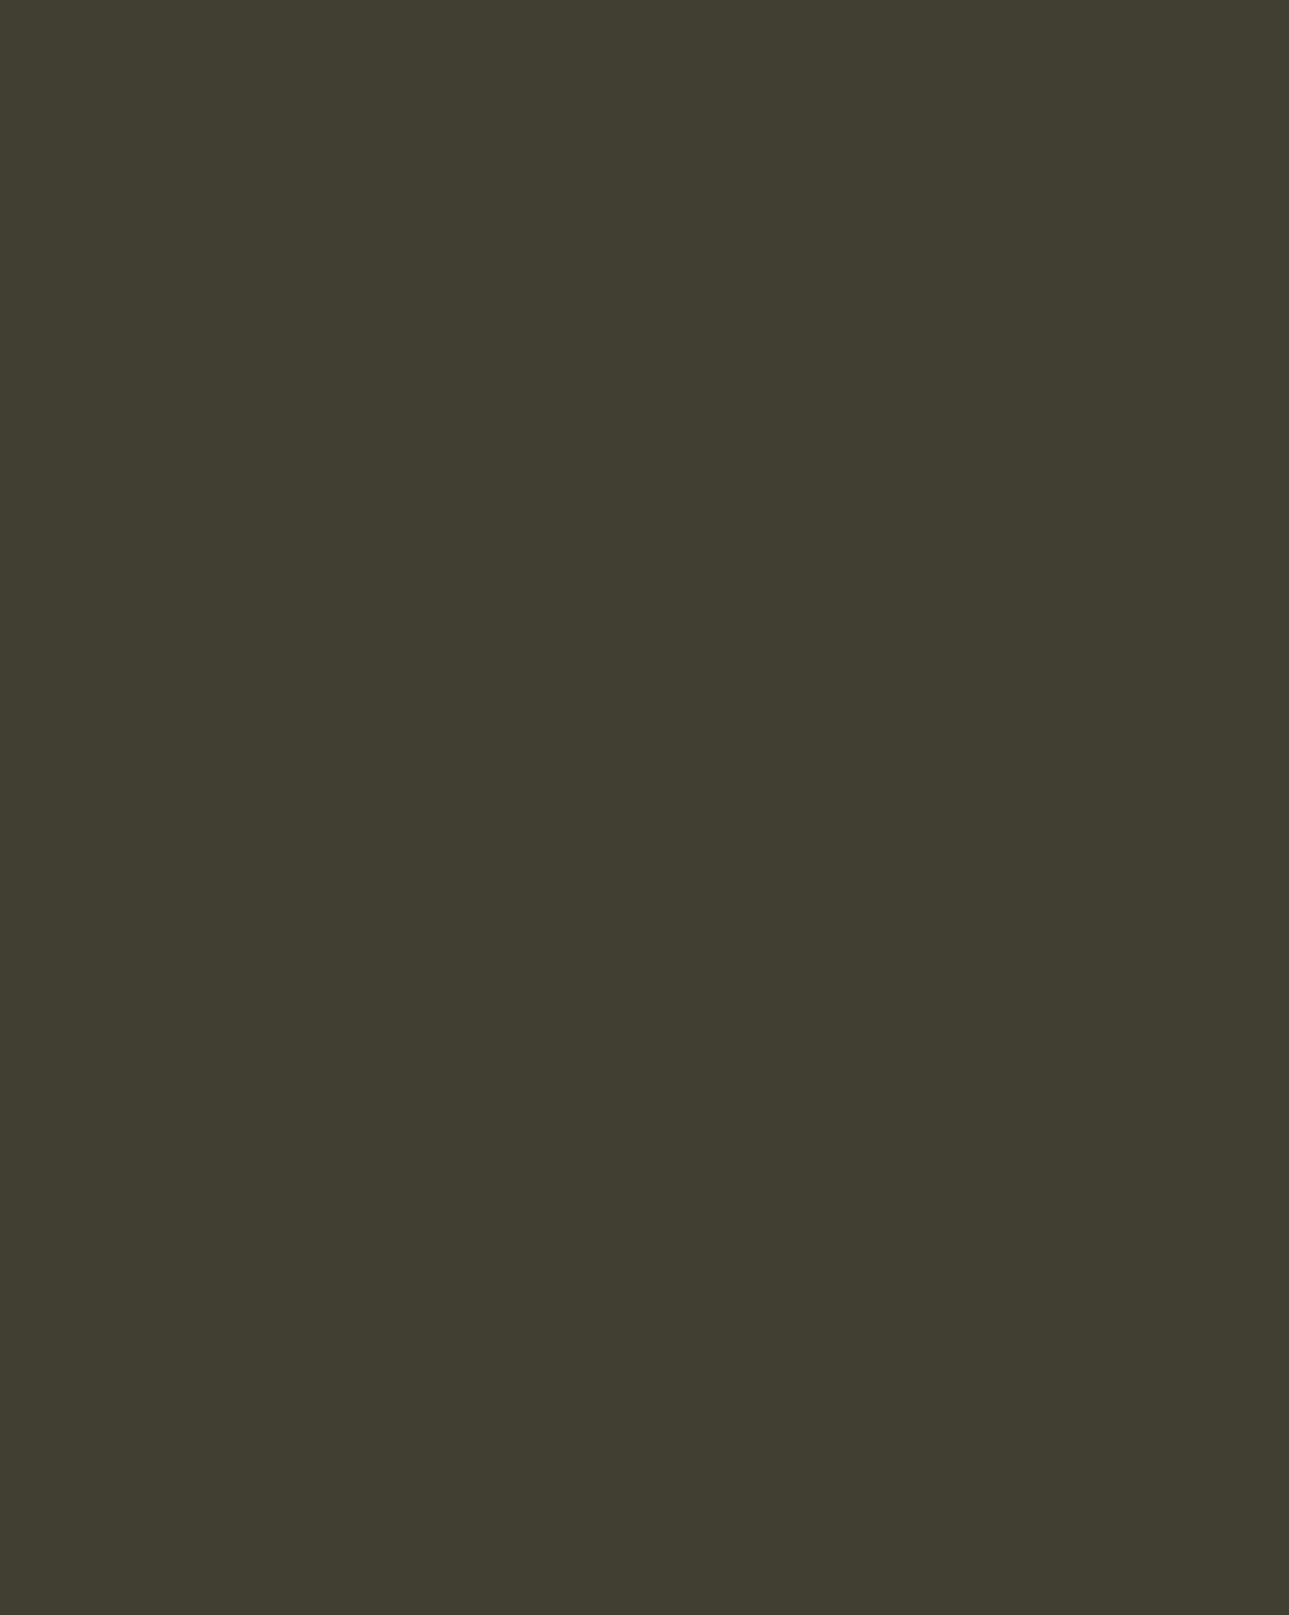 Григорий Мясоедов. Первый оттиск. Портрет художника Ивана Шишкина (фрагмент). 1891. Пензенская областная картинная галерея им. К.А. Савицкого, Пенза